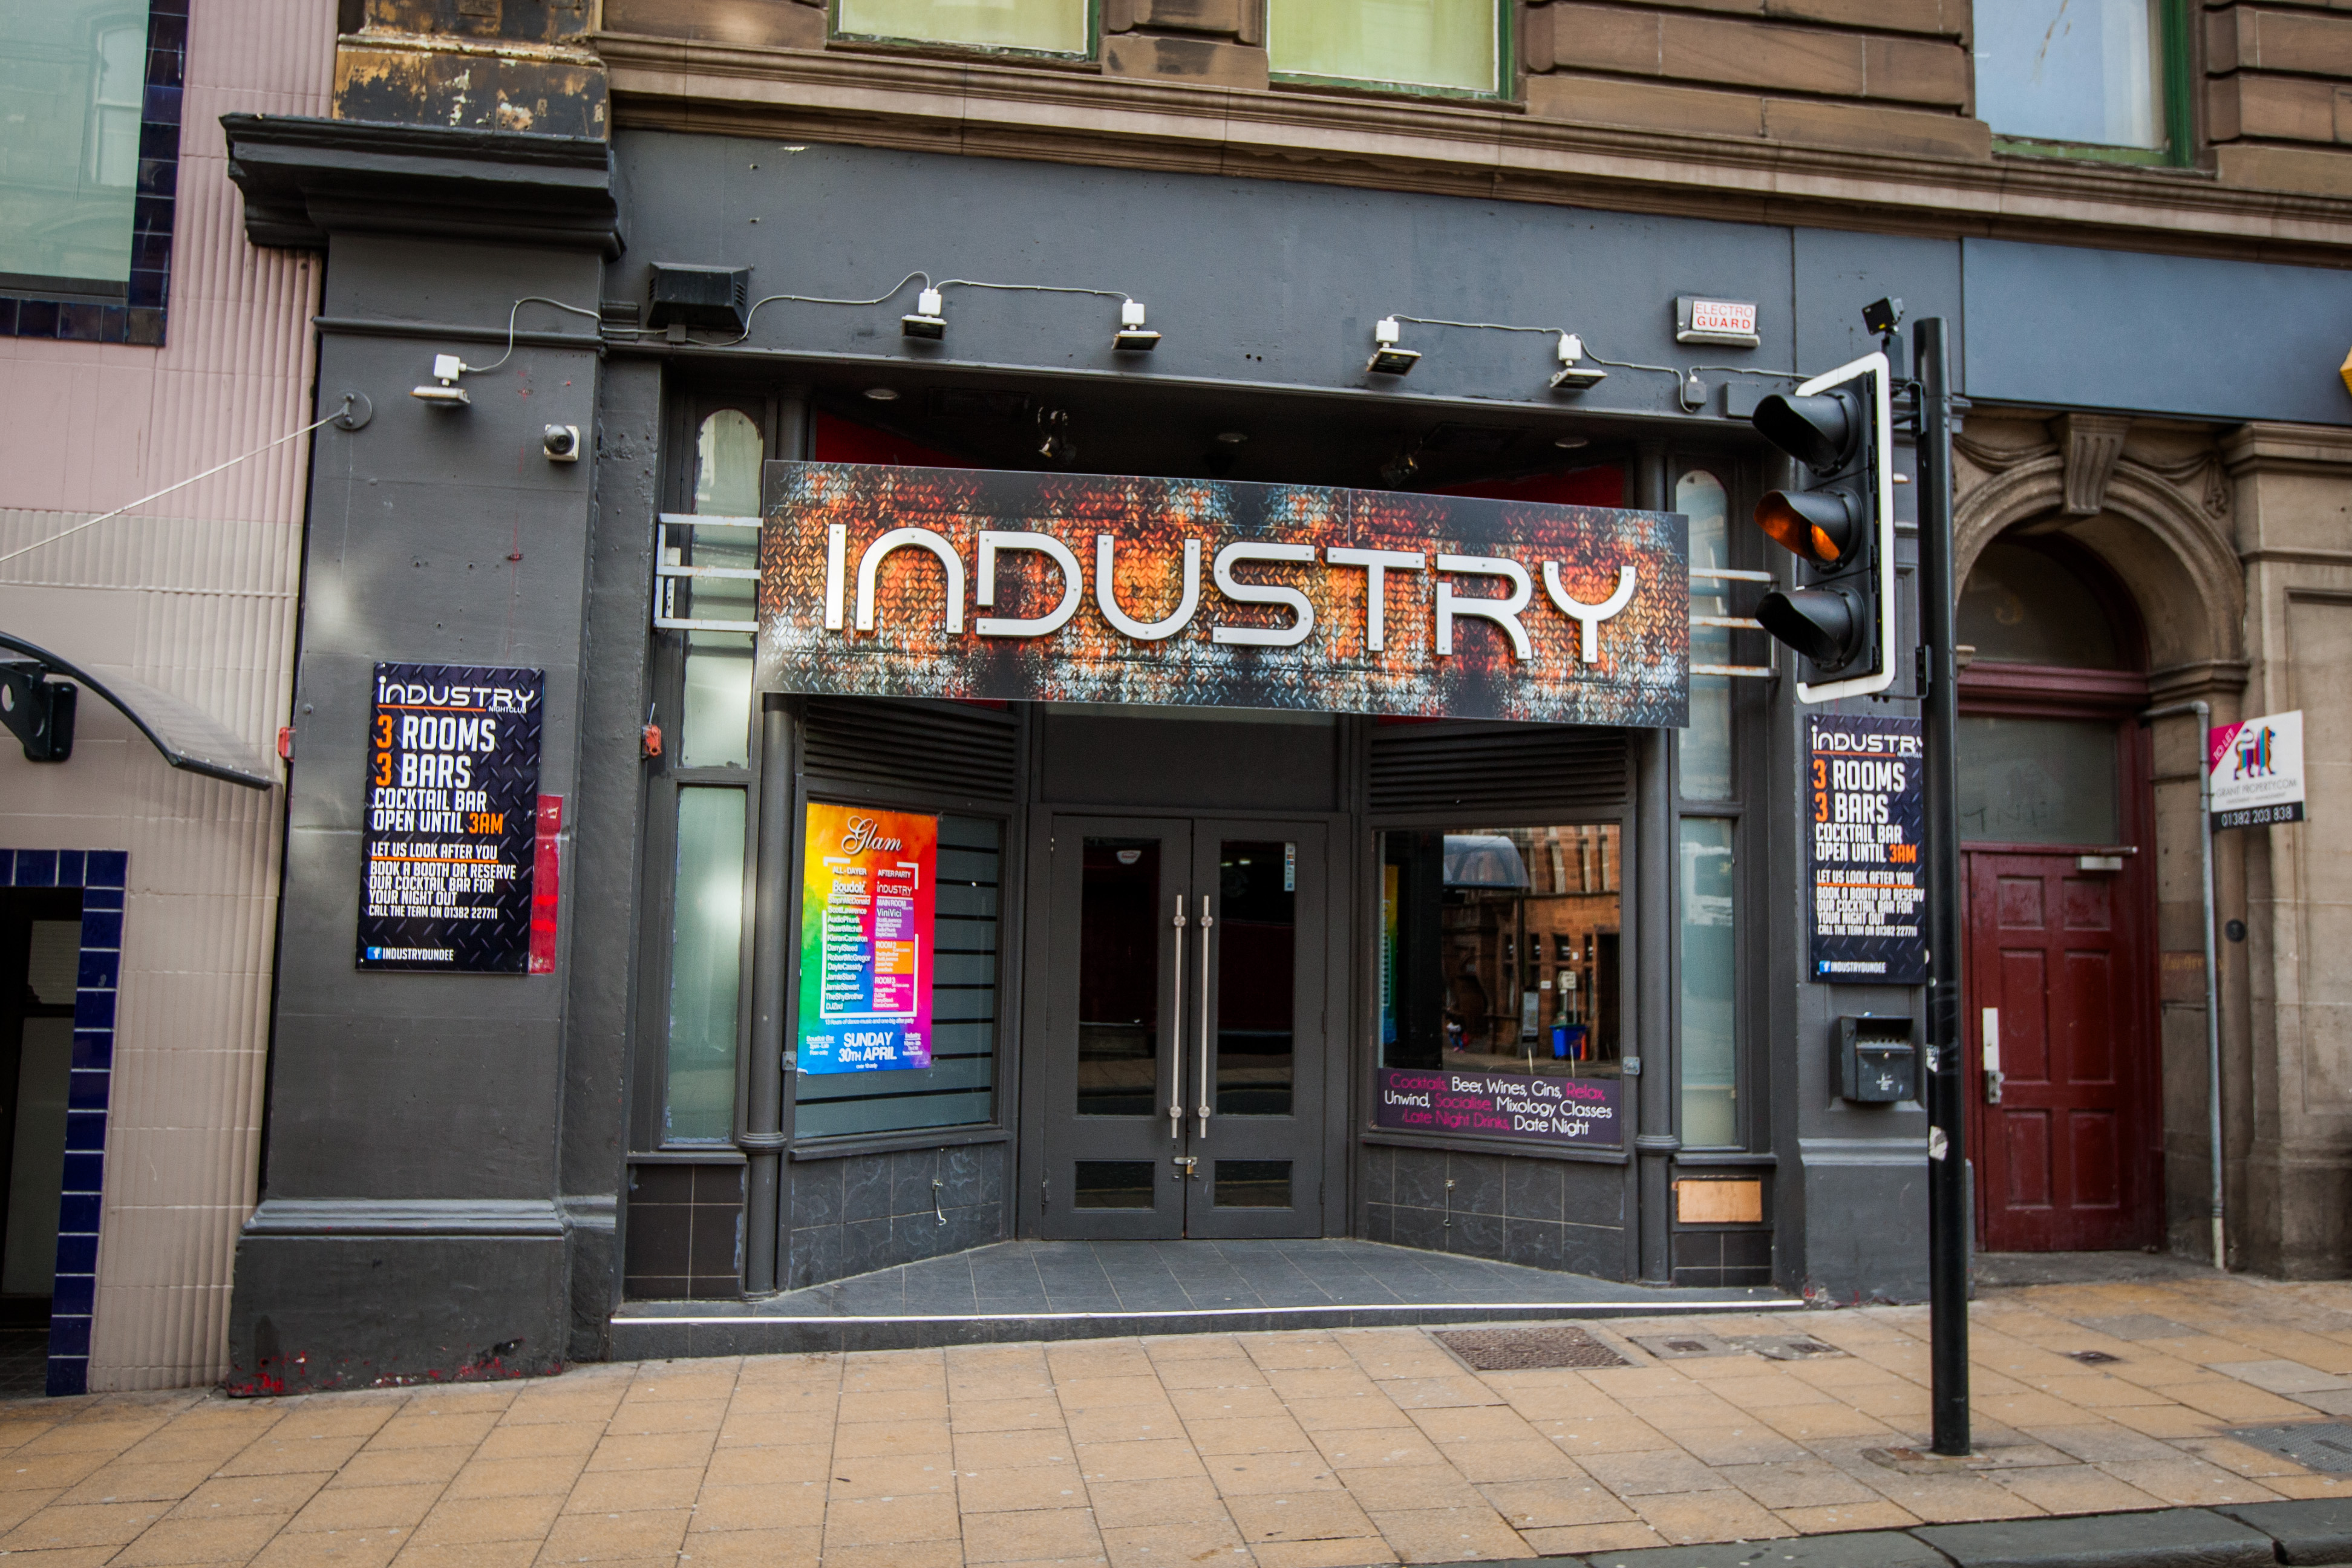 Industry nightclub